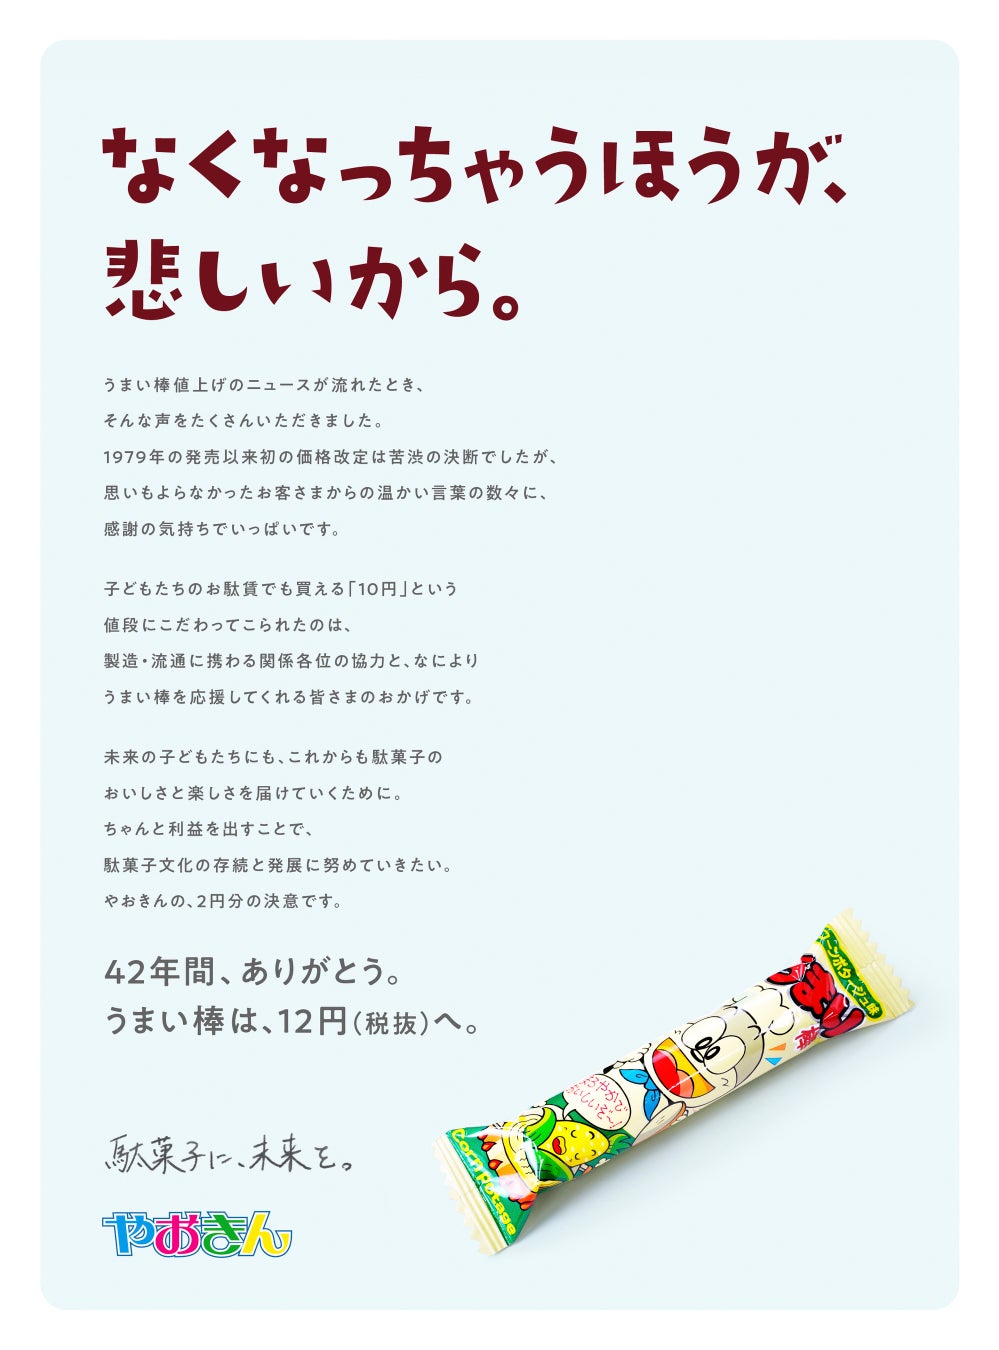 スナック菓子「うまい棒」価格改定に伴い感謝のメッセージ広告・突き出し広告シリーズ展開を実施